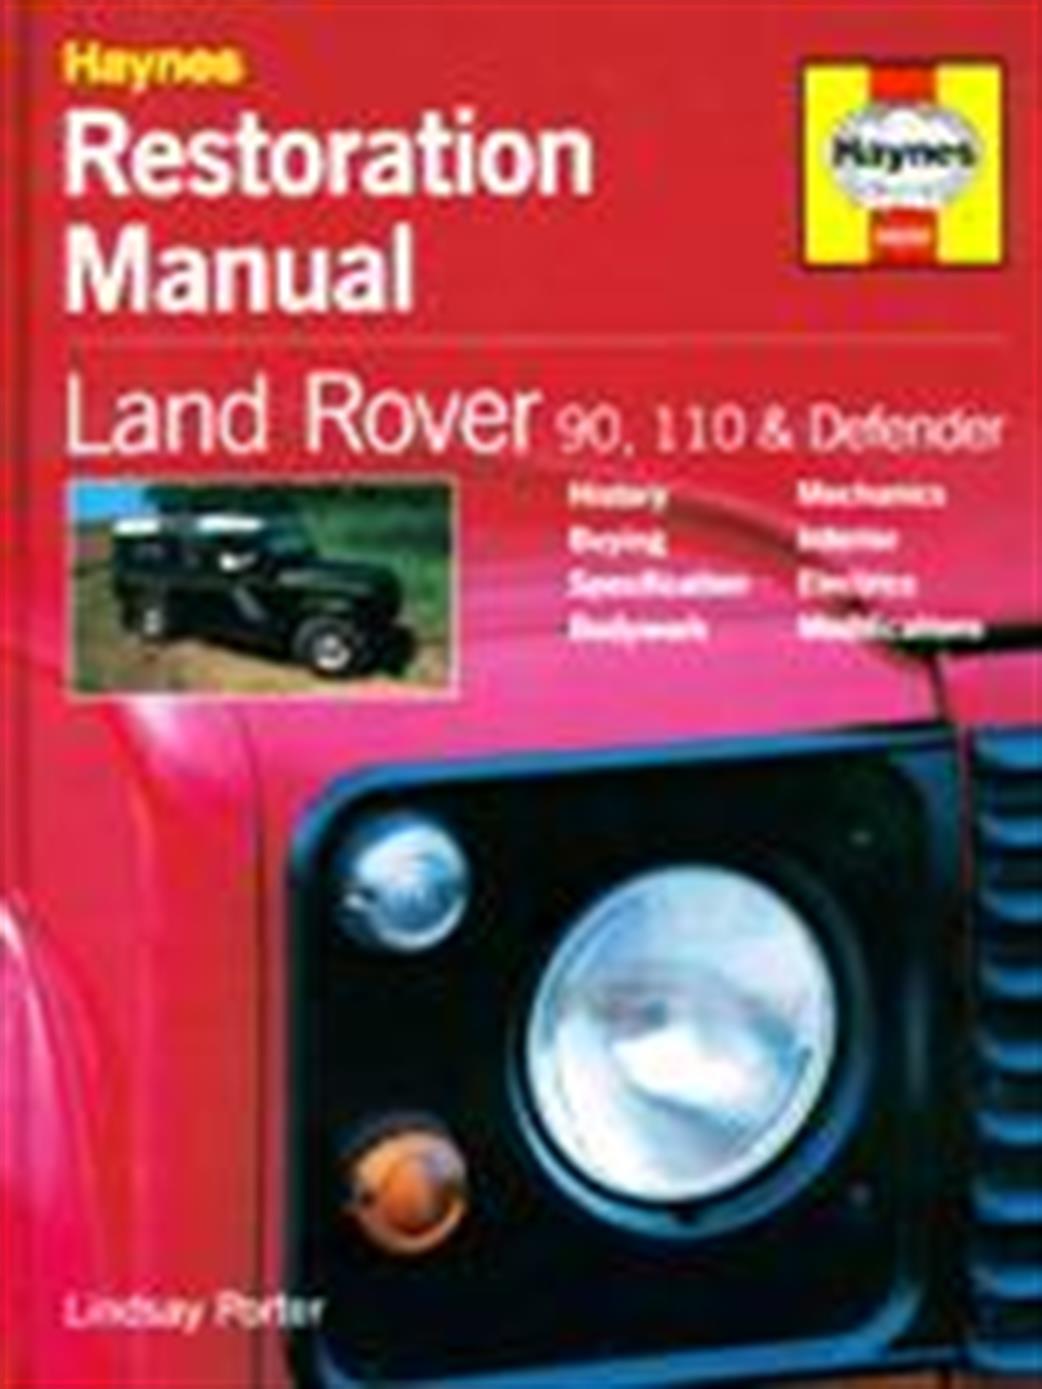 9781859606001 Land Rover Restoration Manual By Lindsay Porter